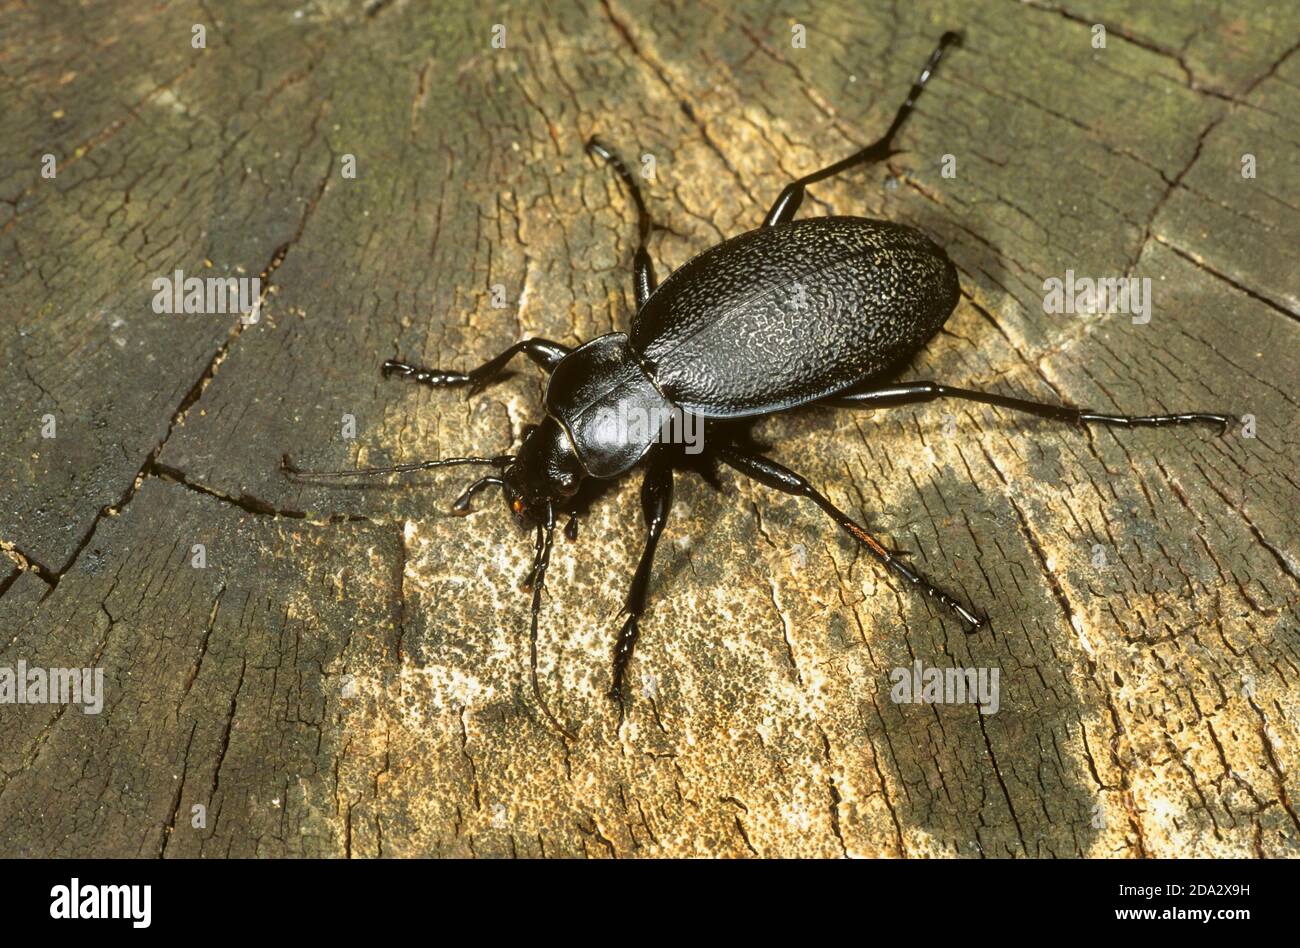 El escarabajo de la tierra de la piel de cuero (Carabus coriaceus), se sienta sobre la madera vieja, Alemania Foto de stock